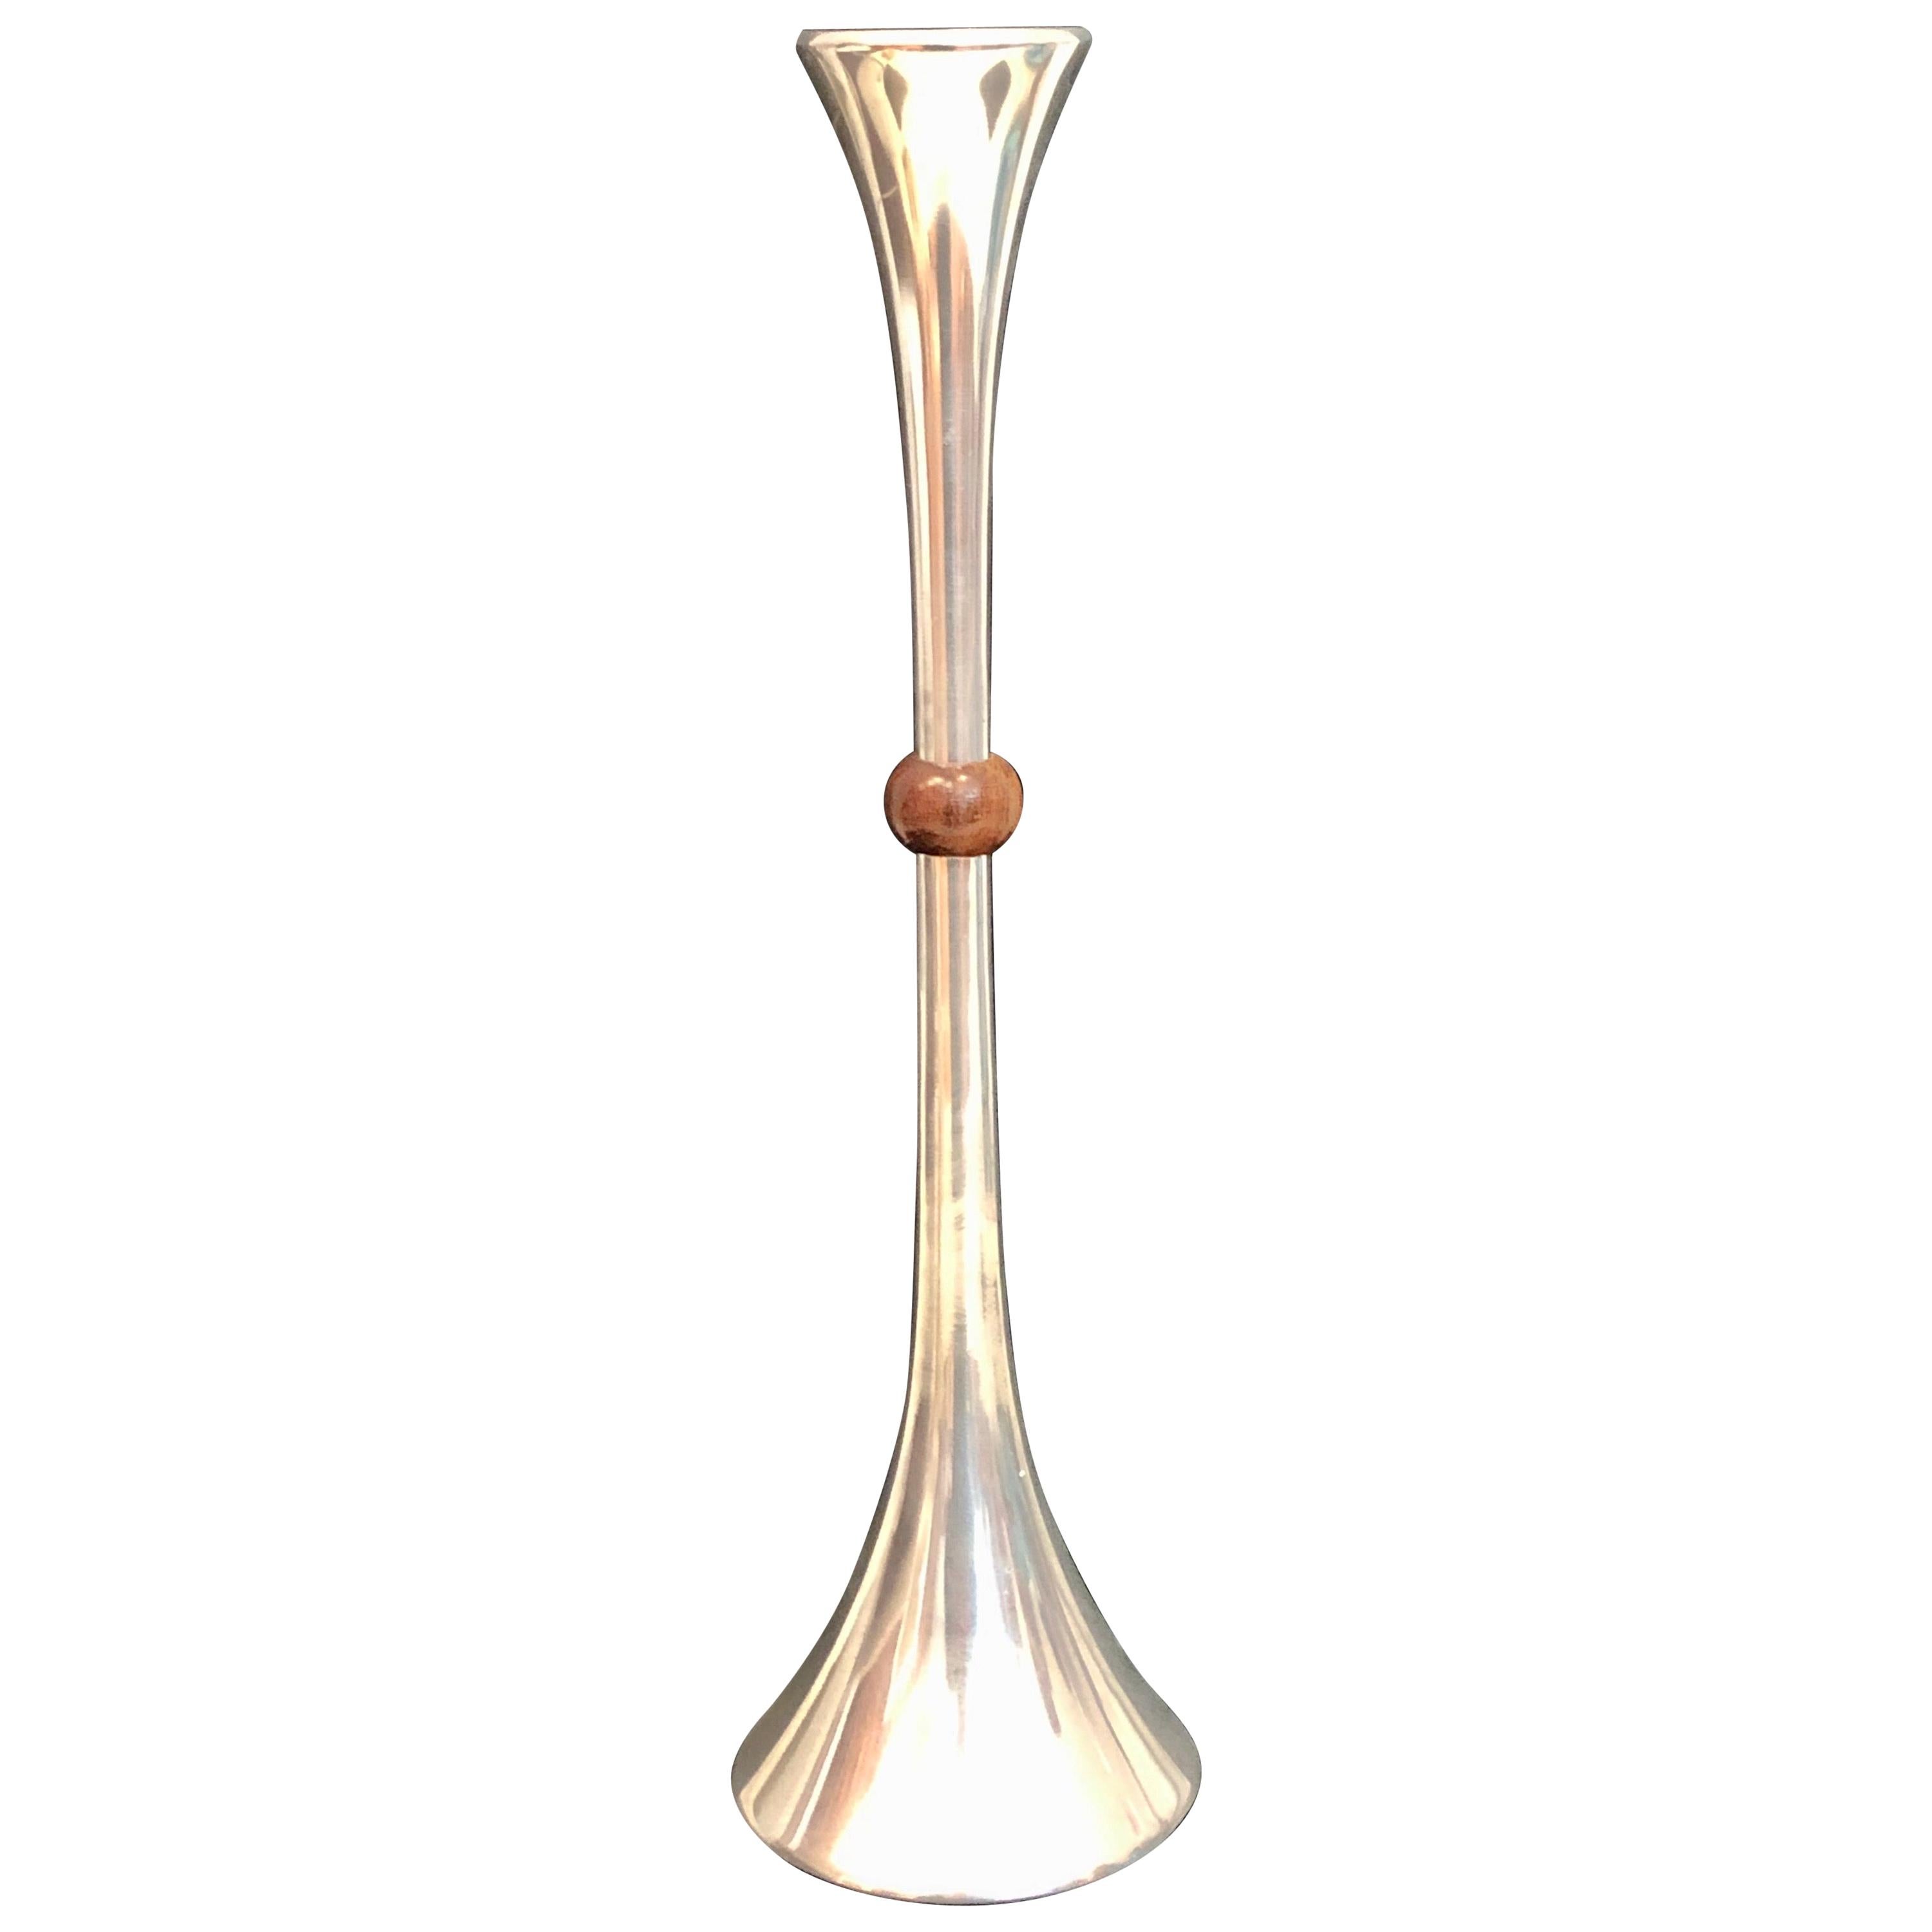 Großer Trompeten-Kerzenhalter entworfen von Quistgaard für Dansk Aluminum und Walnussholz